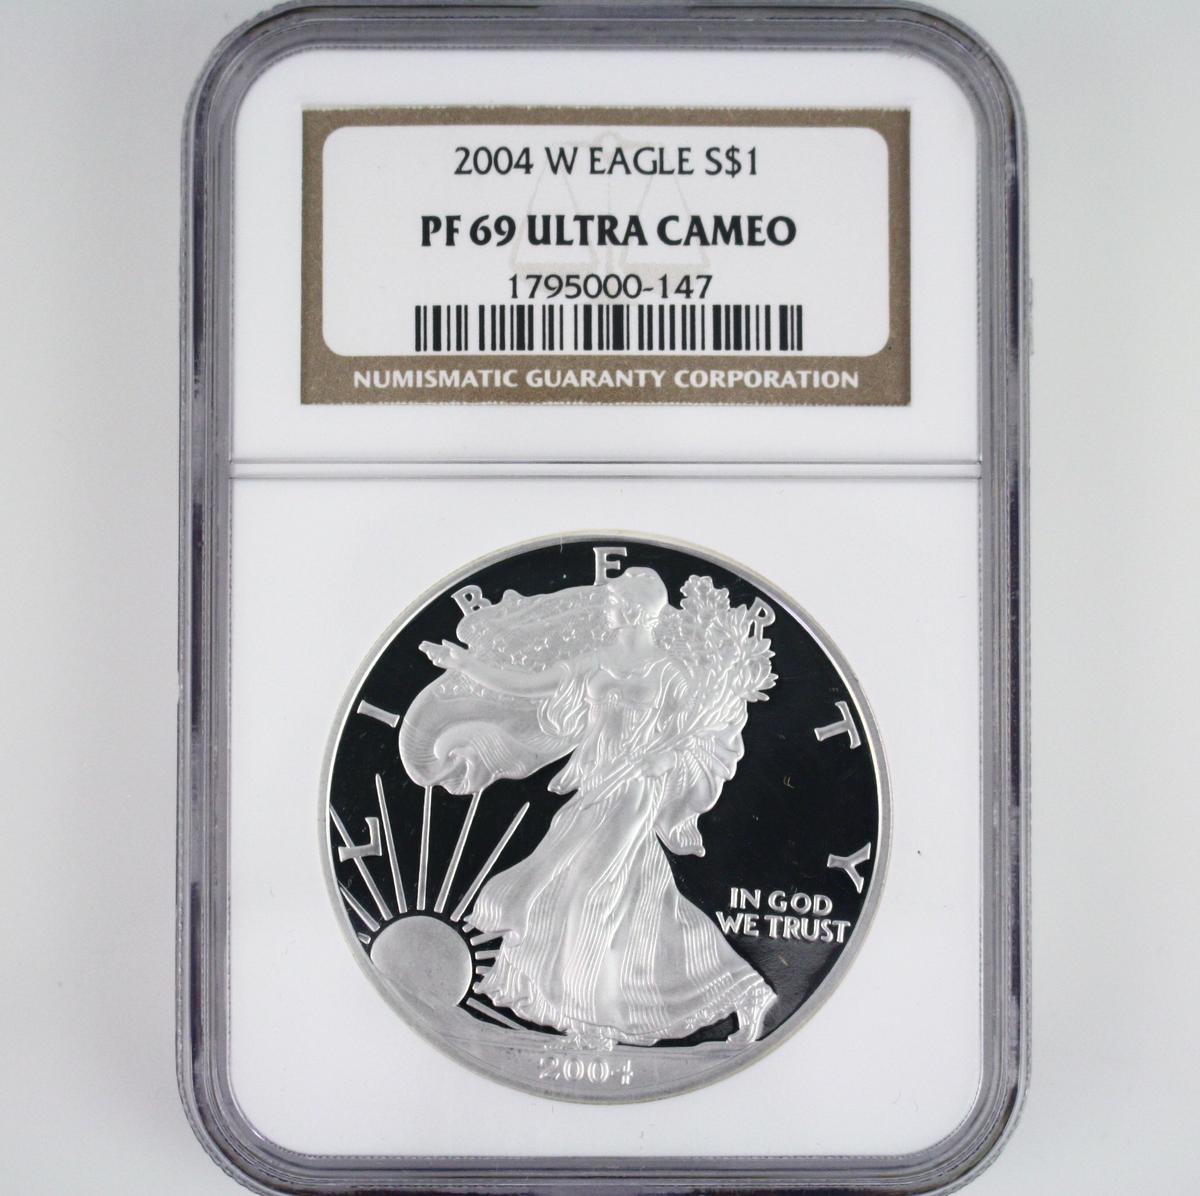 Certified 2004-W U.S. proof American Eagle silver dollar